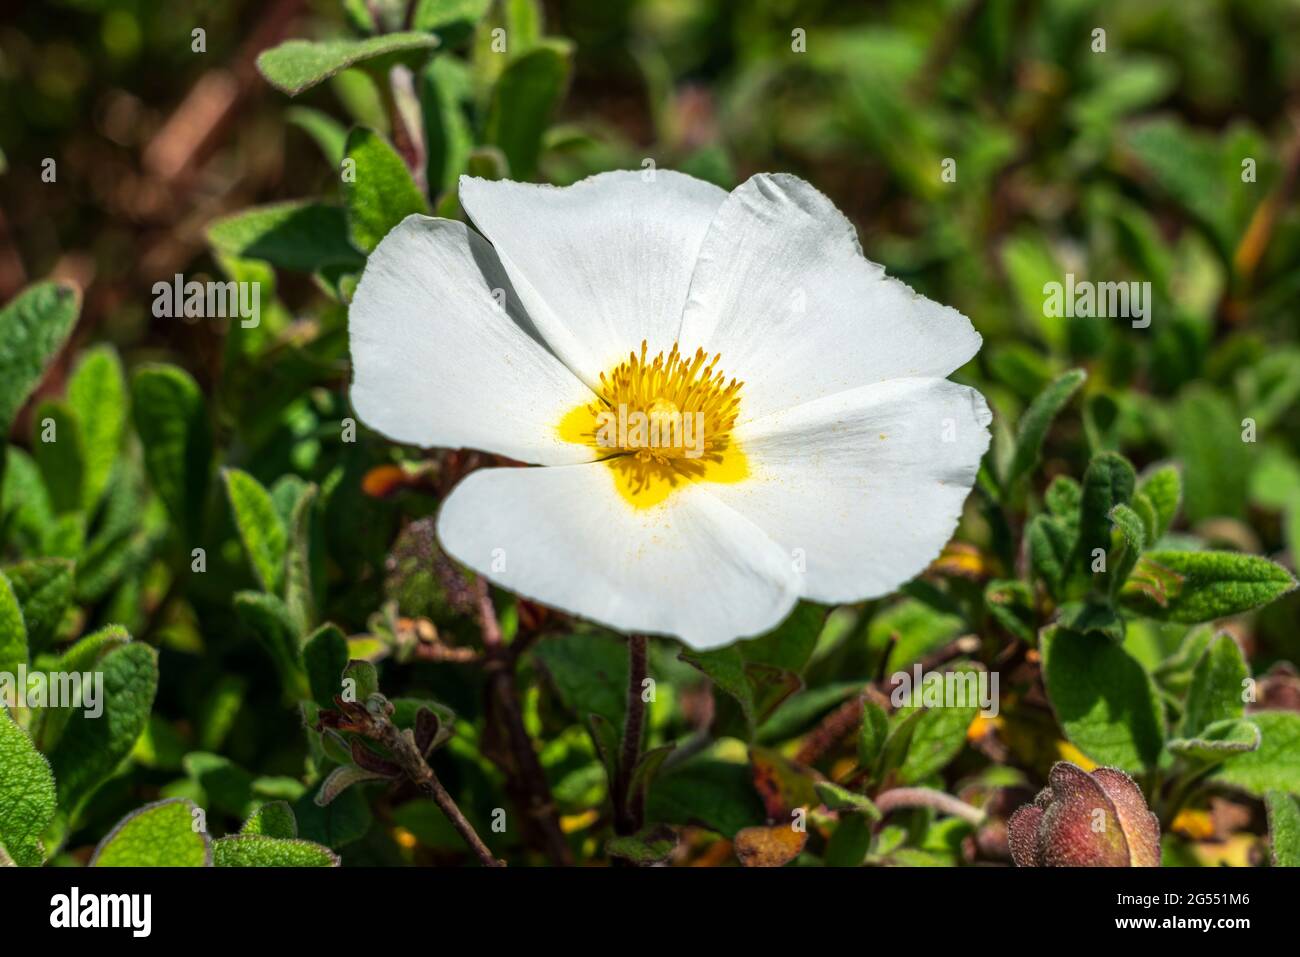 Cistus x corbariensis plante arbustive compacte à fleurs d'été avec une fleur blanche d'été communément connue sous le nom de rose rocheuse, image de stock photo Banque D'Images